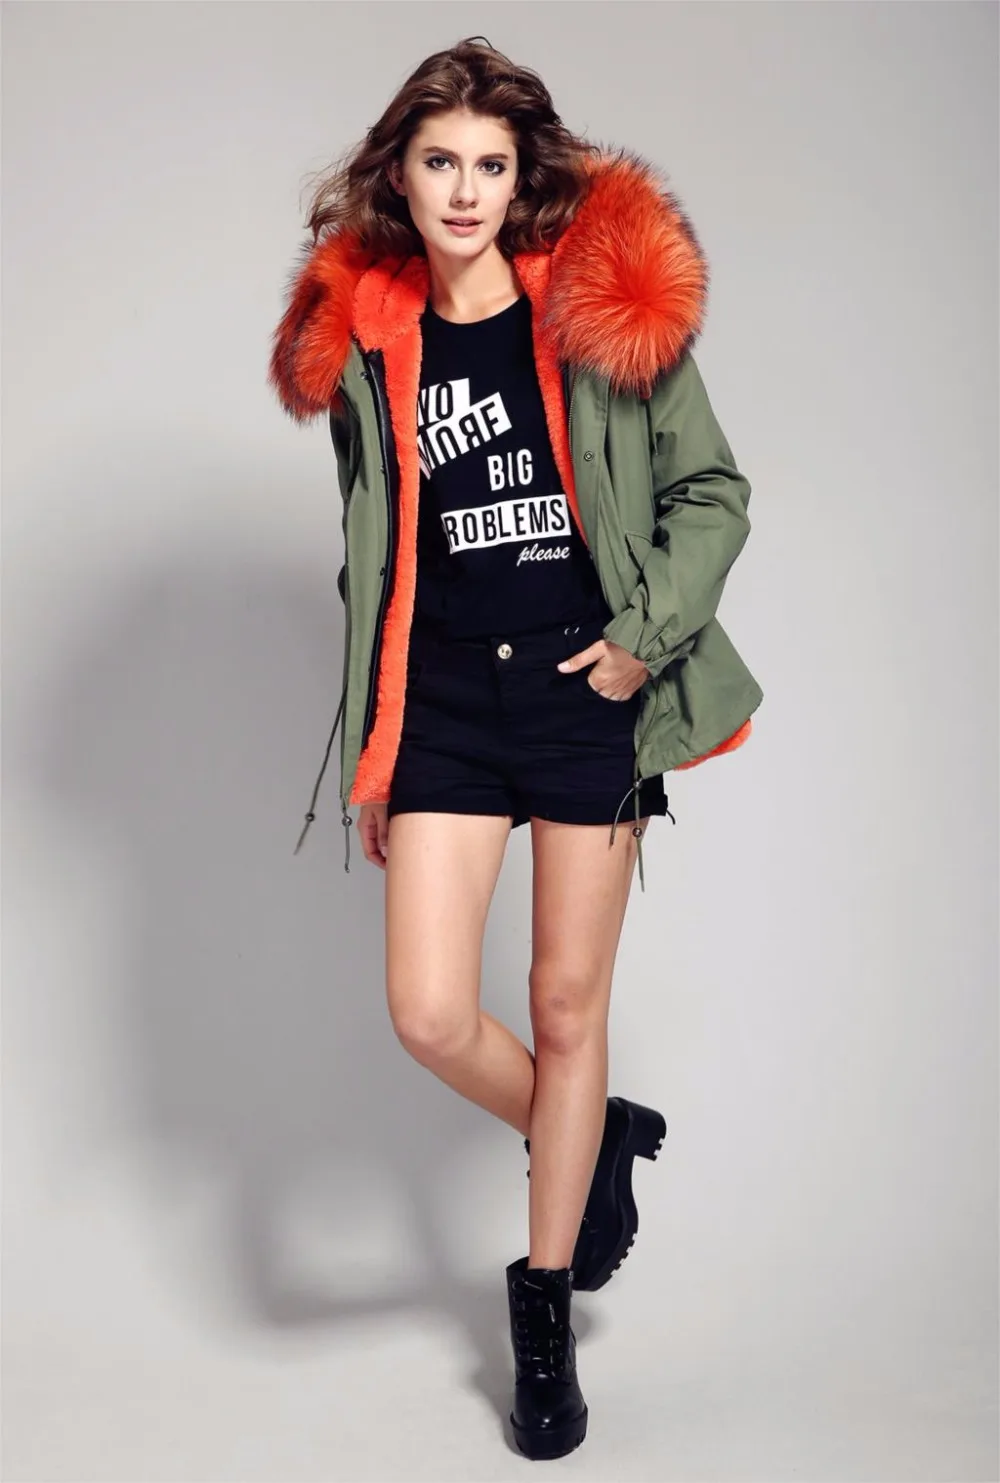 Американский стиль, зимняя модная повседневная куртка с капюшоном из натурального меха енота на толстой подкладке, джинсовые пальто, куртки, женские парки, бренд